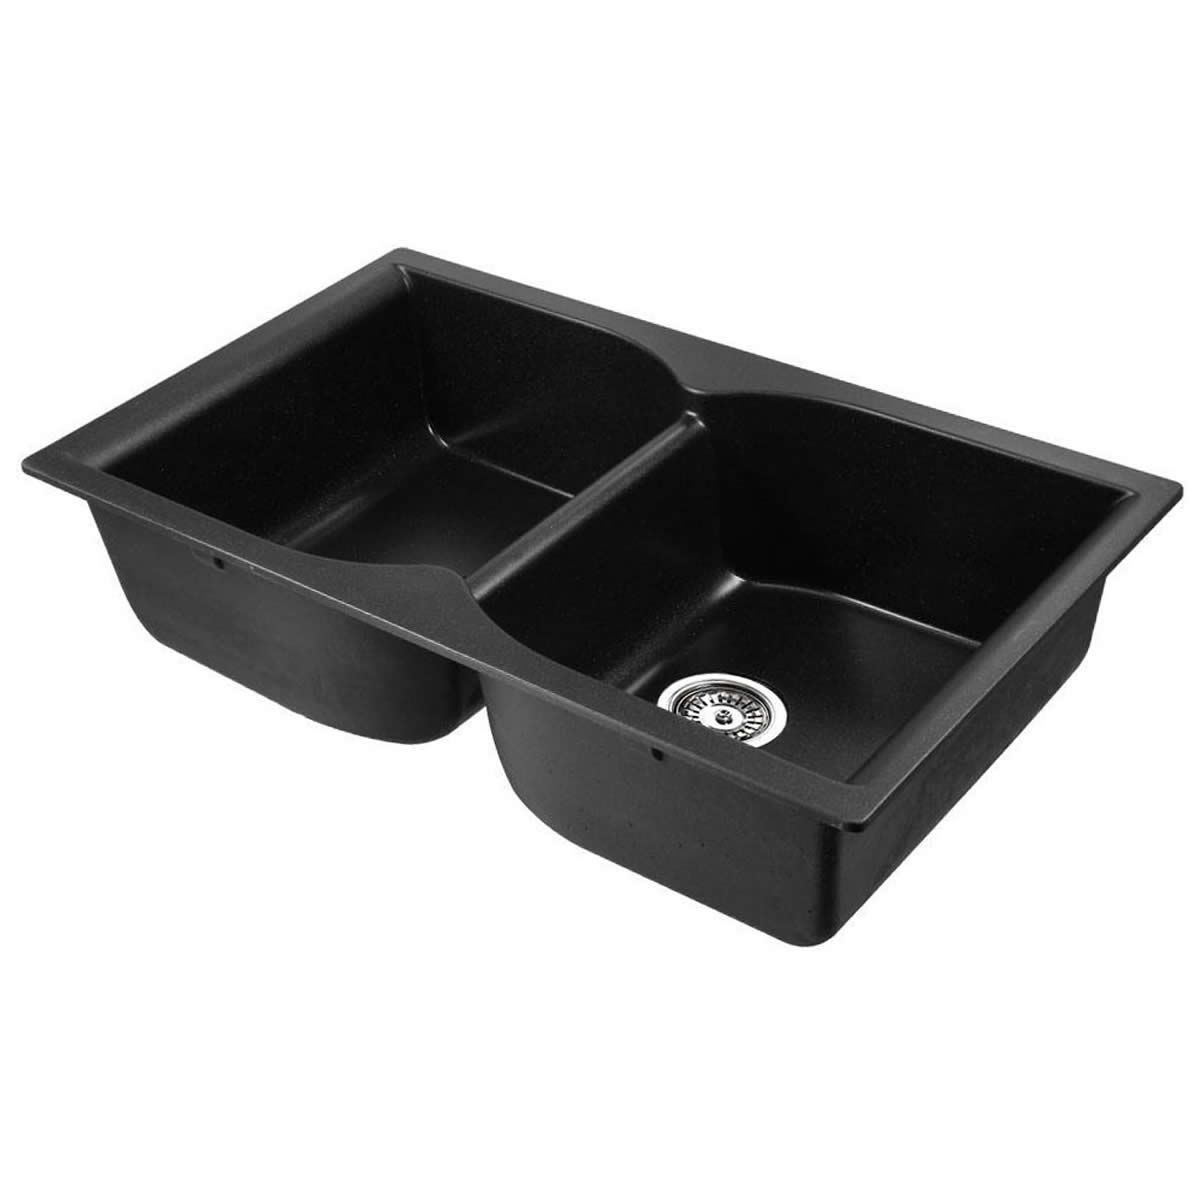 Stone Kitchen Sink 860x500 - Black